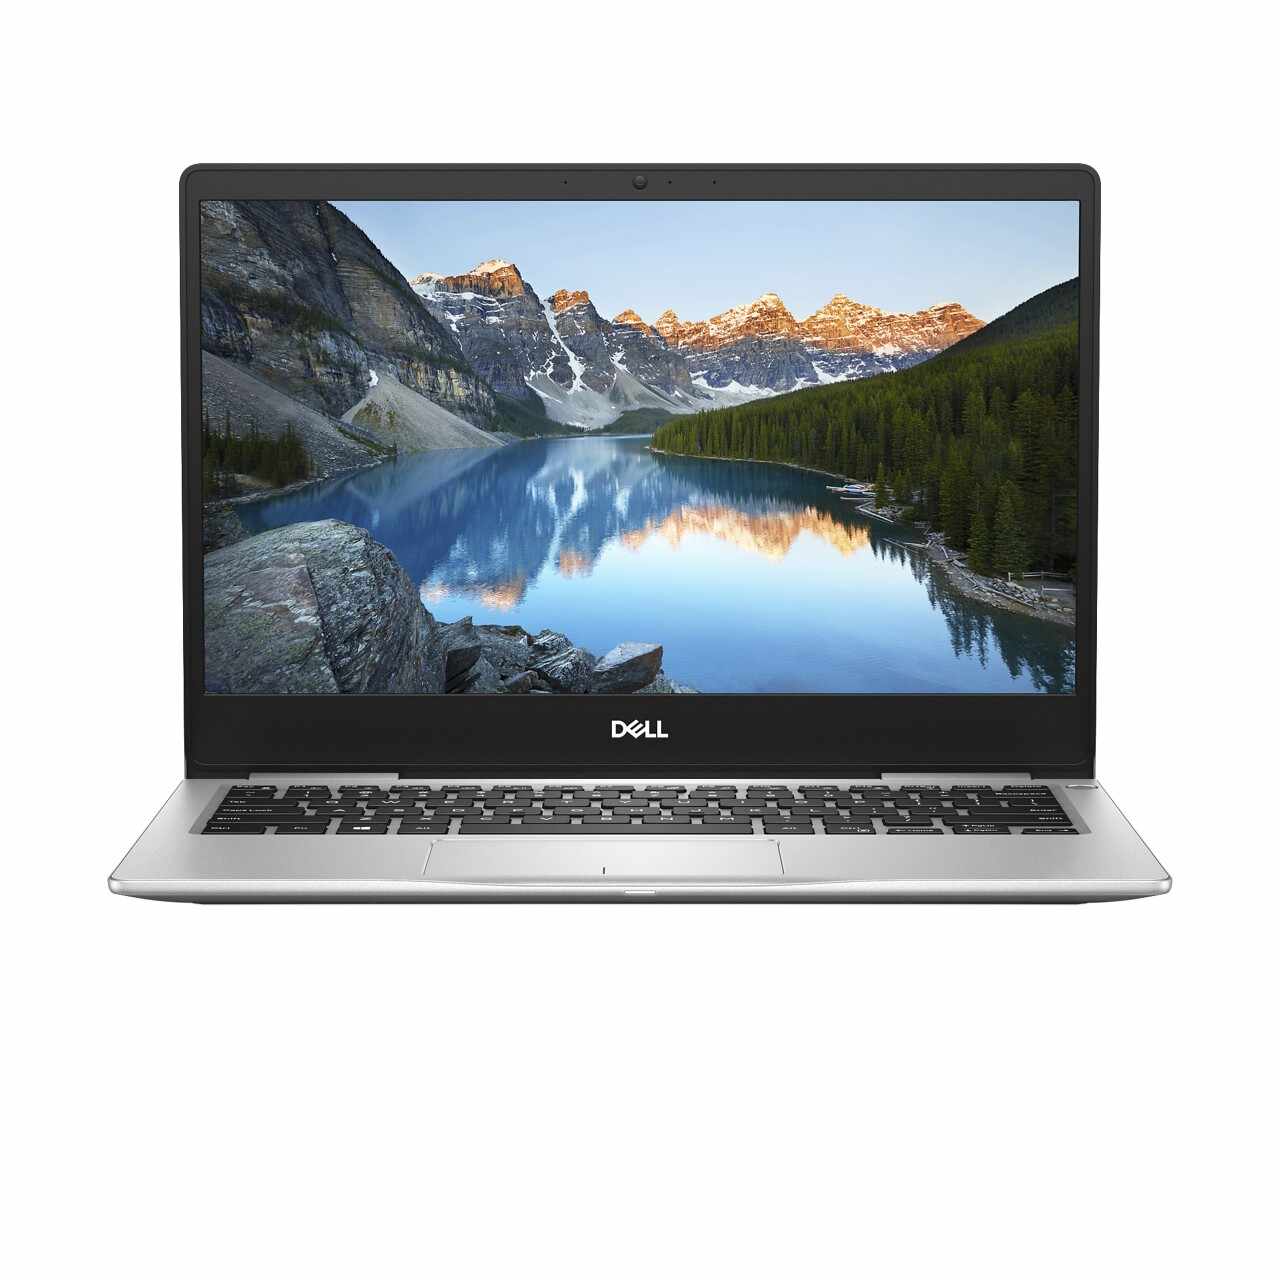 Laptop DELL, INSPIRON 7380, Intel Core i7-8565U, 1.80 GHz, HDD: 256 GB, RAM: 8 GB, webcam